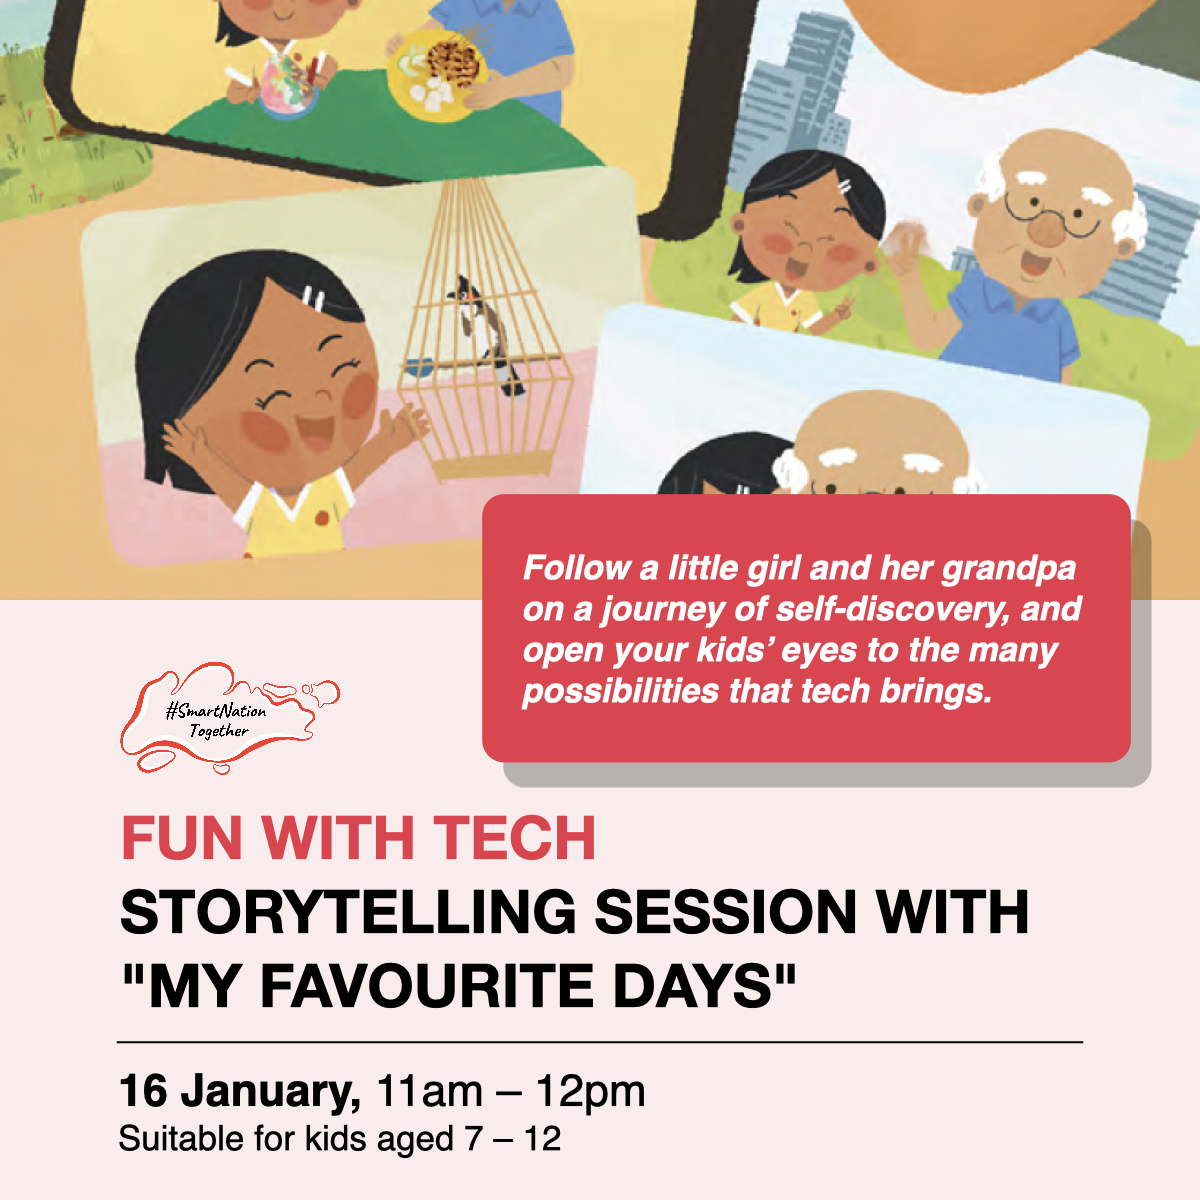 Storytelling session for kids